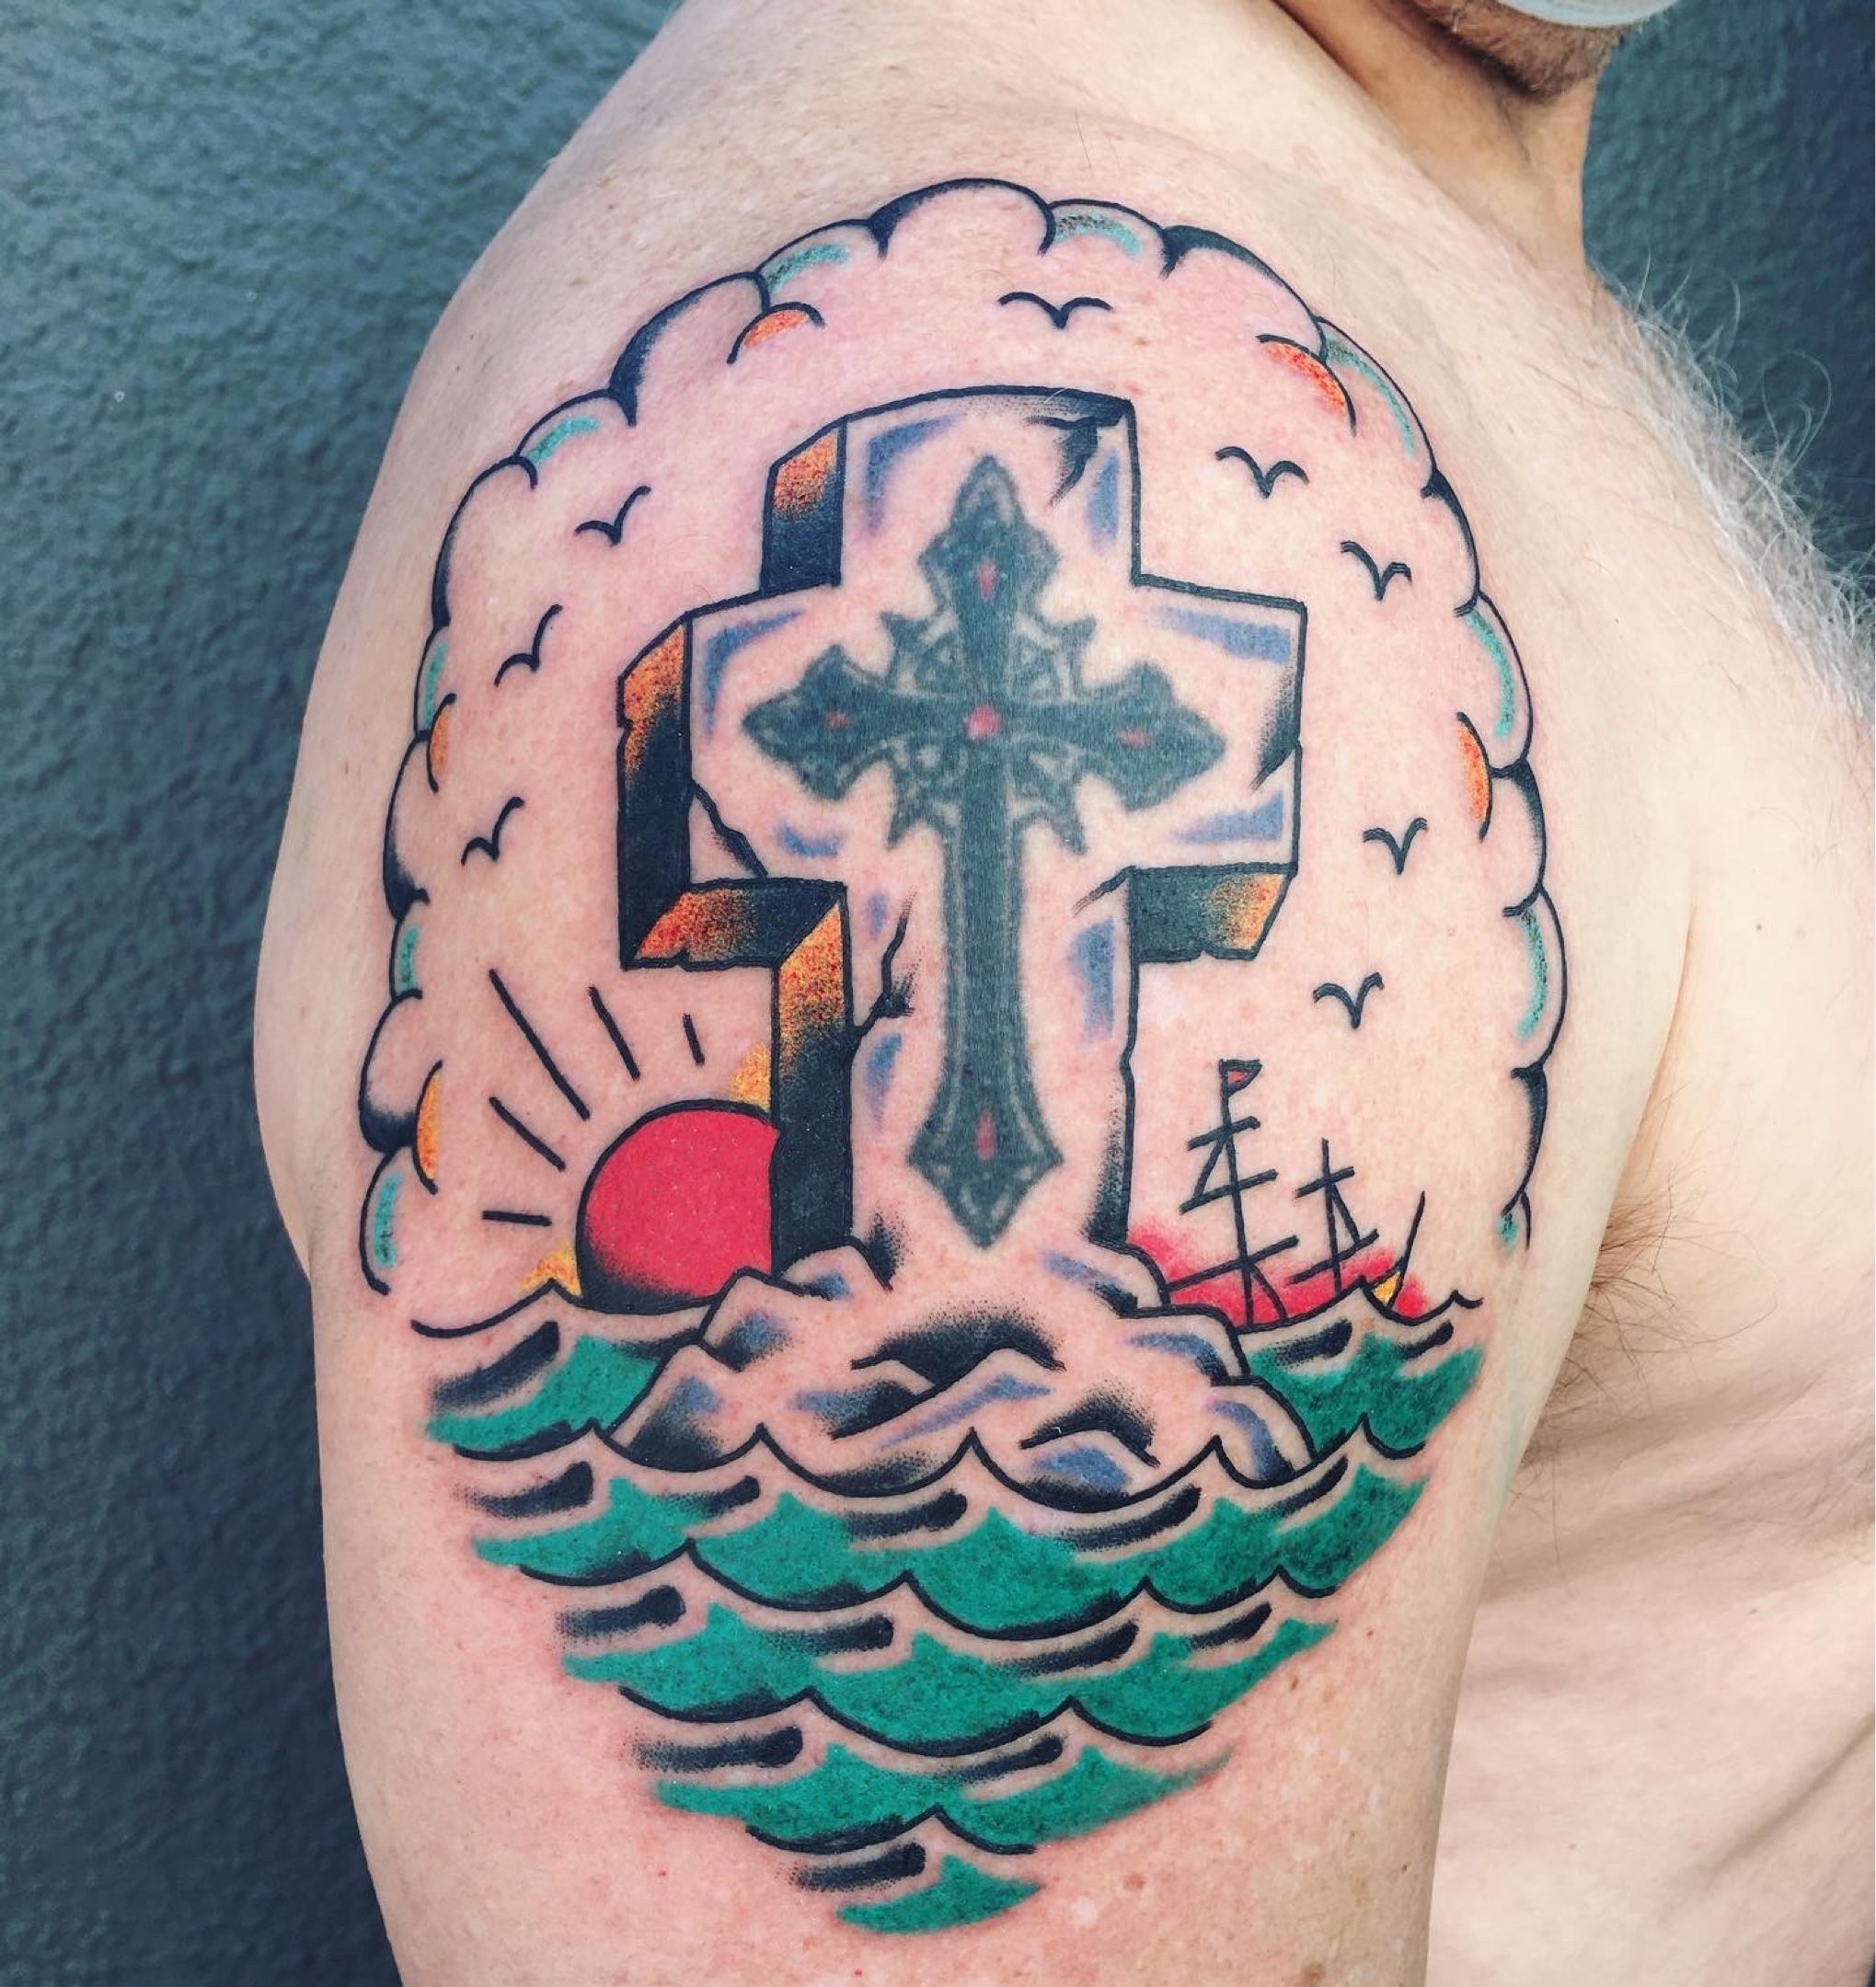 Three Cross | Cross tattoo designs, Cross tattoo for men, Cross tattoo  meaning